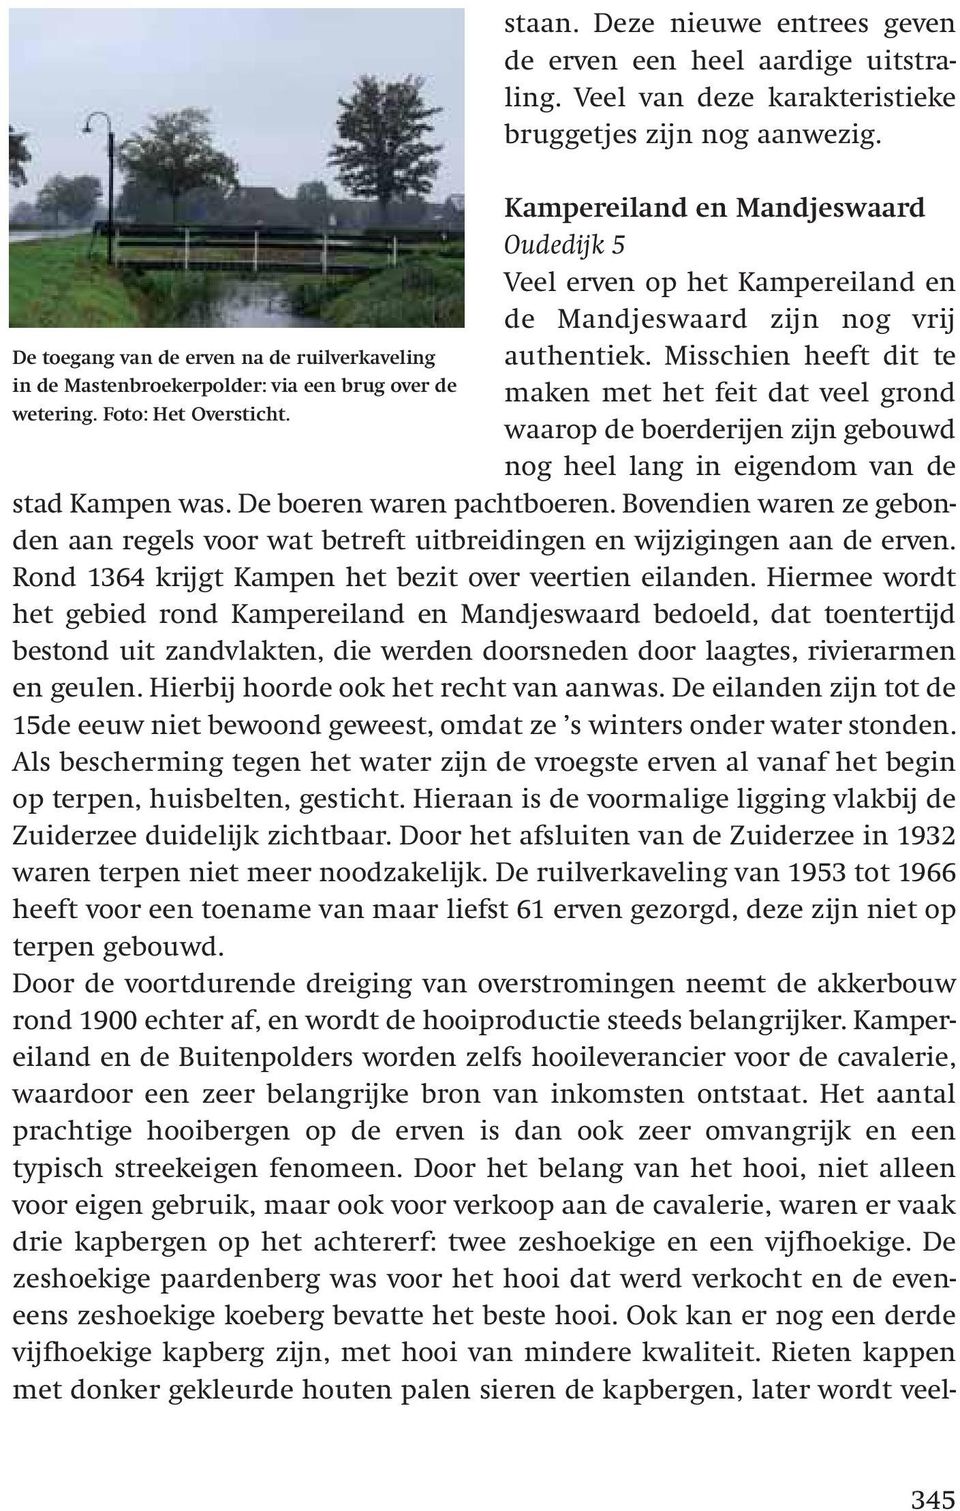 Misschien heeft dit te maken met het feit dat veel grond waarop de boerderijen zijn gebouwd nog heel lang in eigendom van de stad Kampen was. De boeren waren pachtboeren.